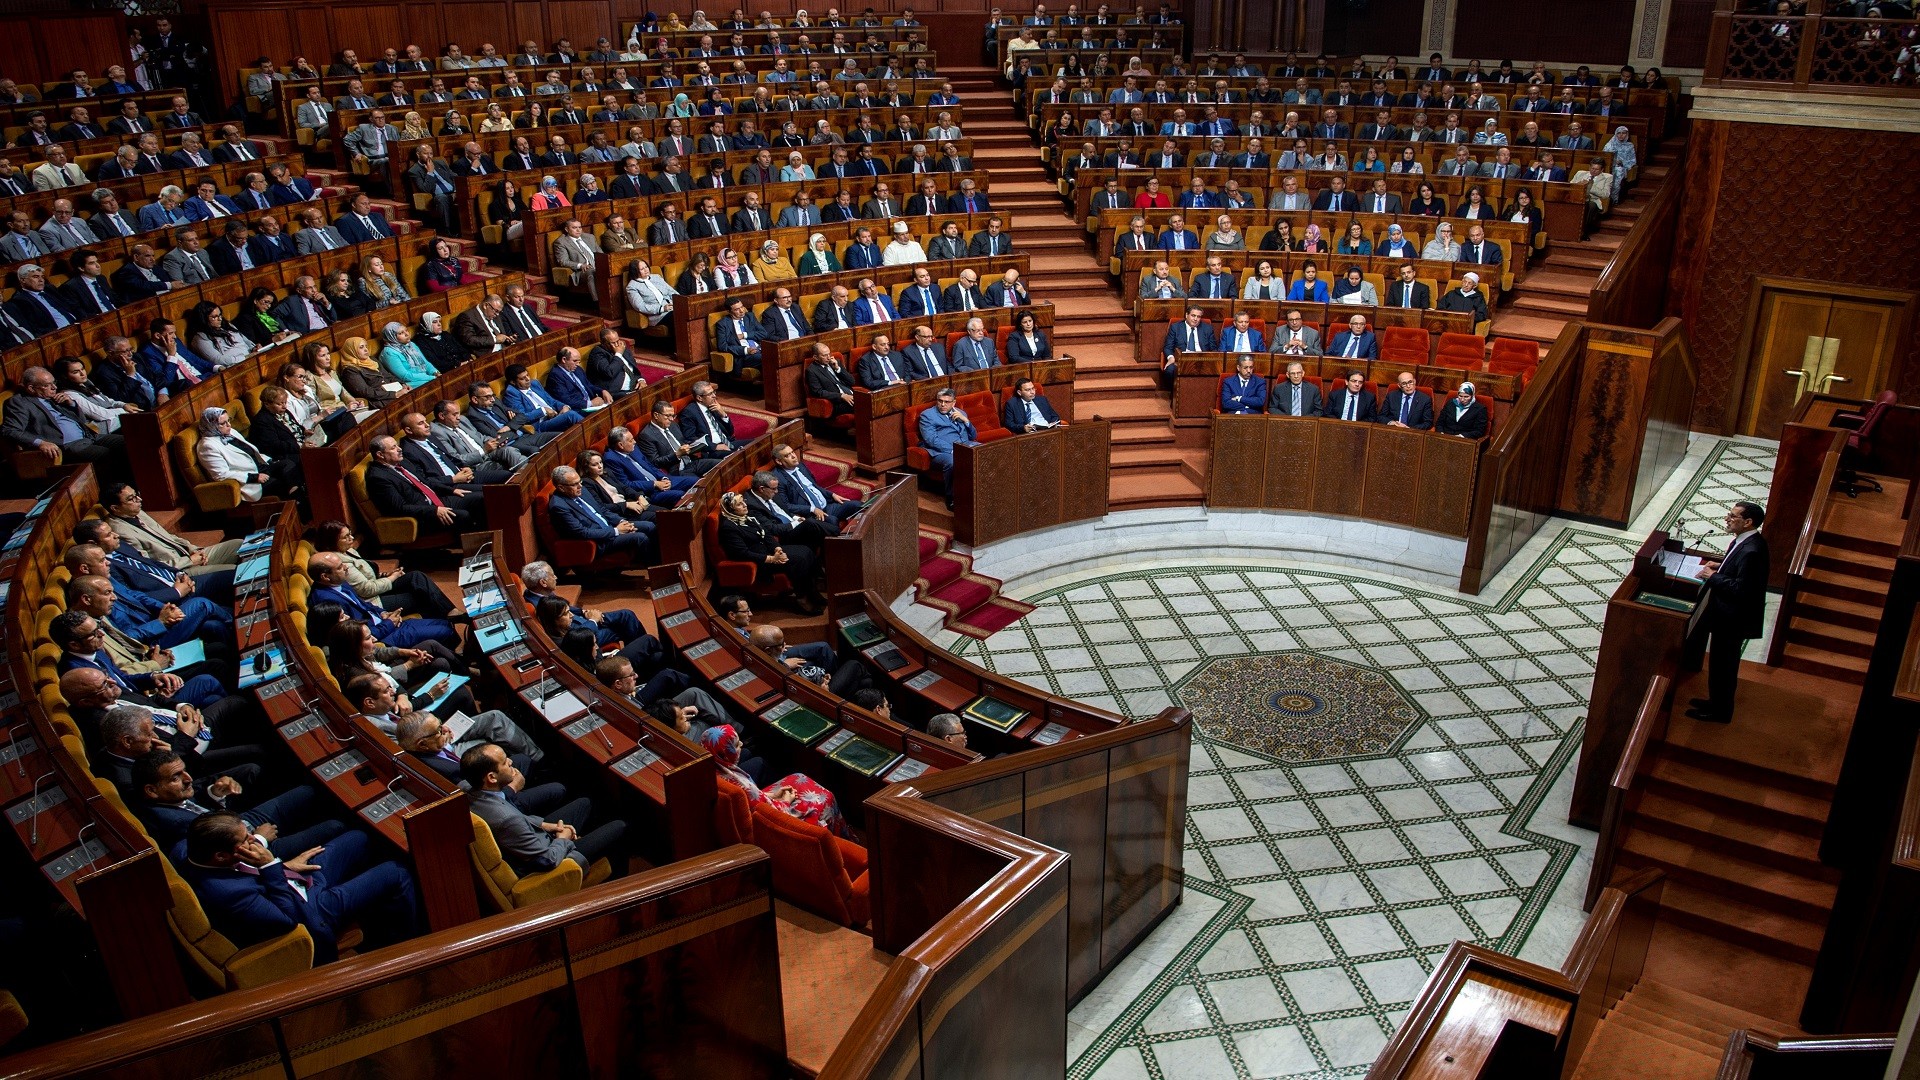 اللجنة البرلمانية المشتركة المغربية -الاتحاد الأوروبي تعقد سلسلة من الاجتماعات بالبرلمان الاوروبي  ببروكسيل 